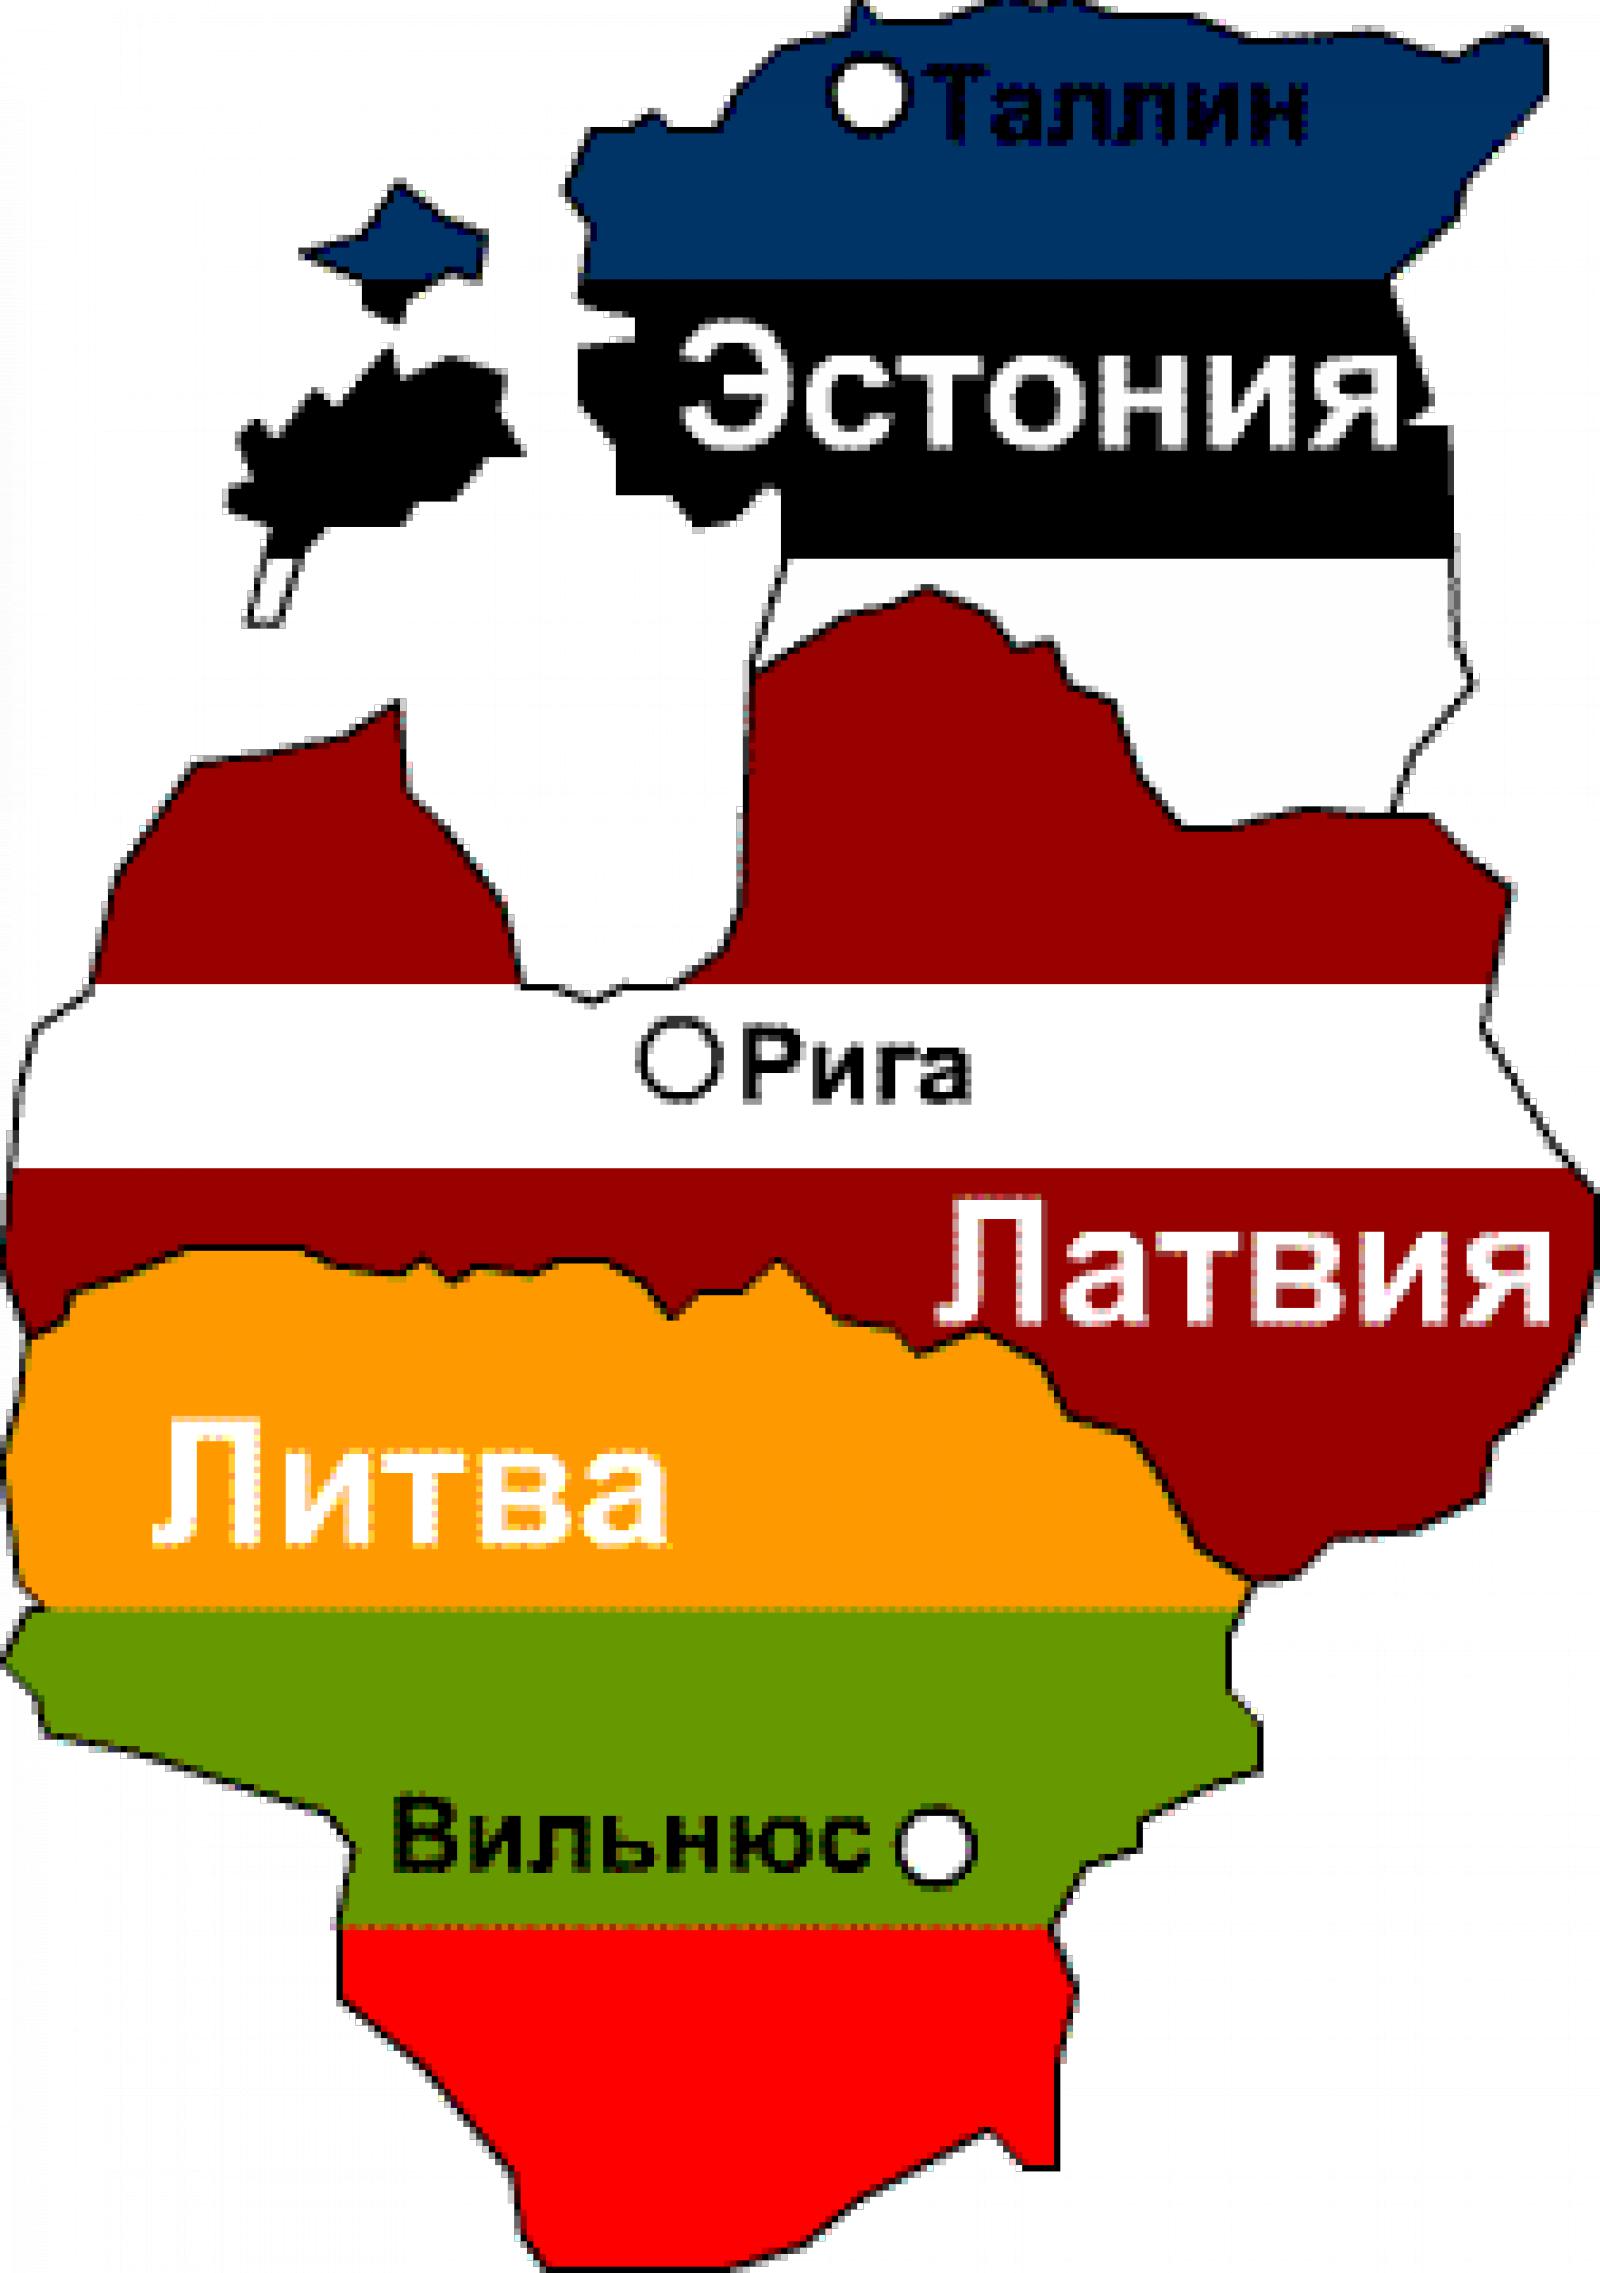 Страны Балтии Эстония Латвия